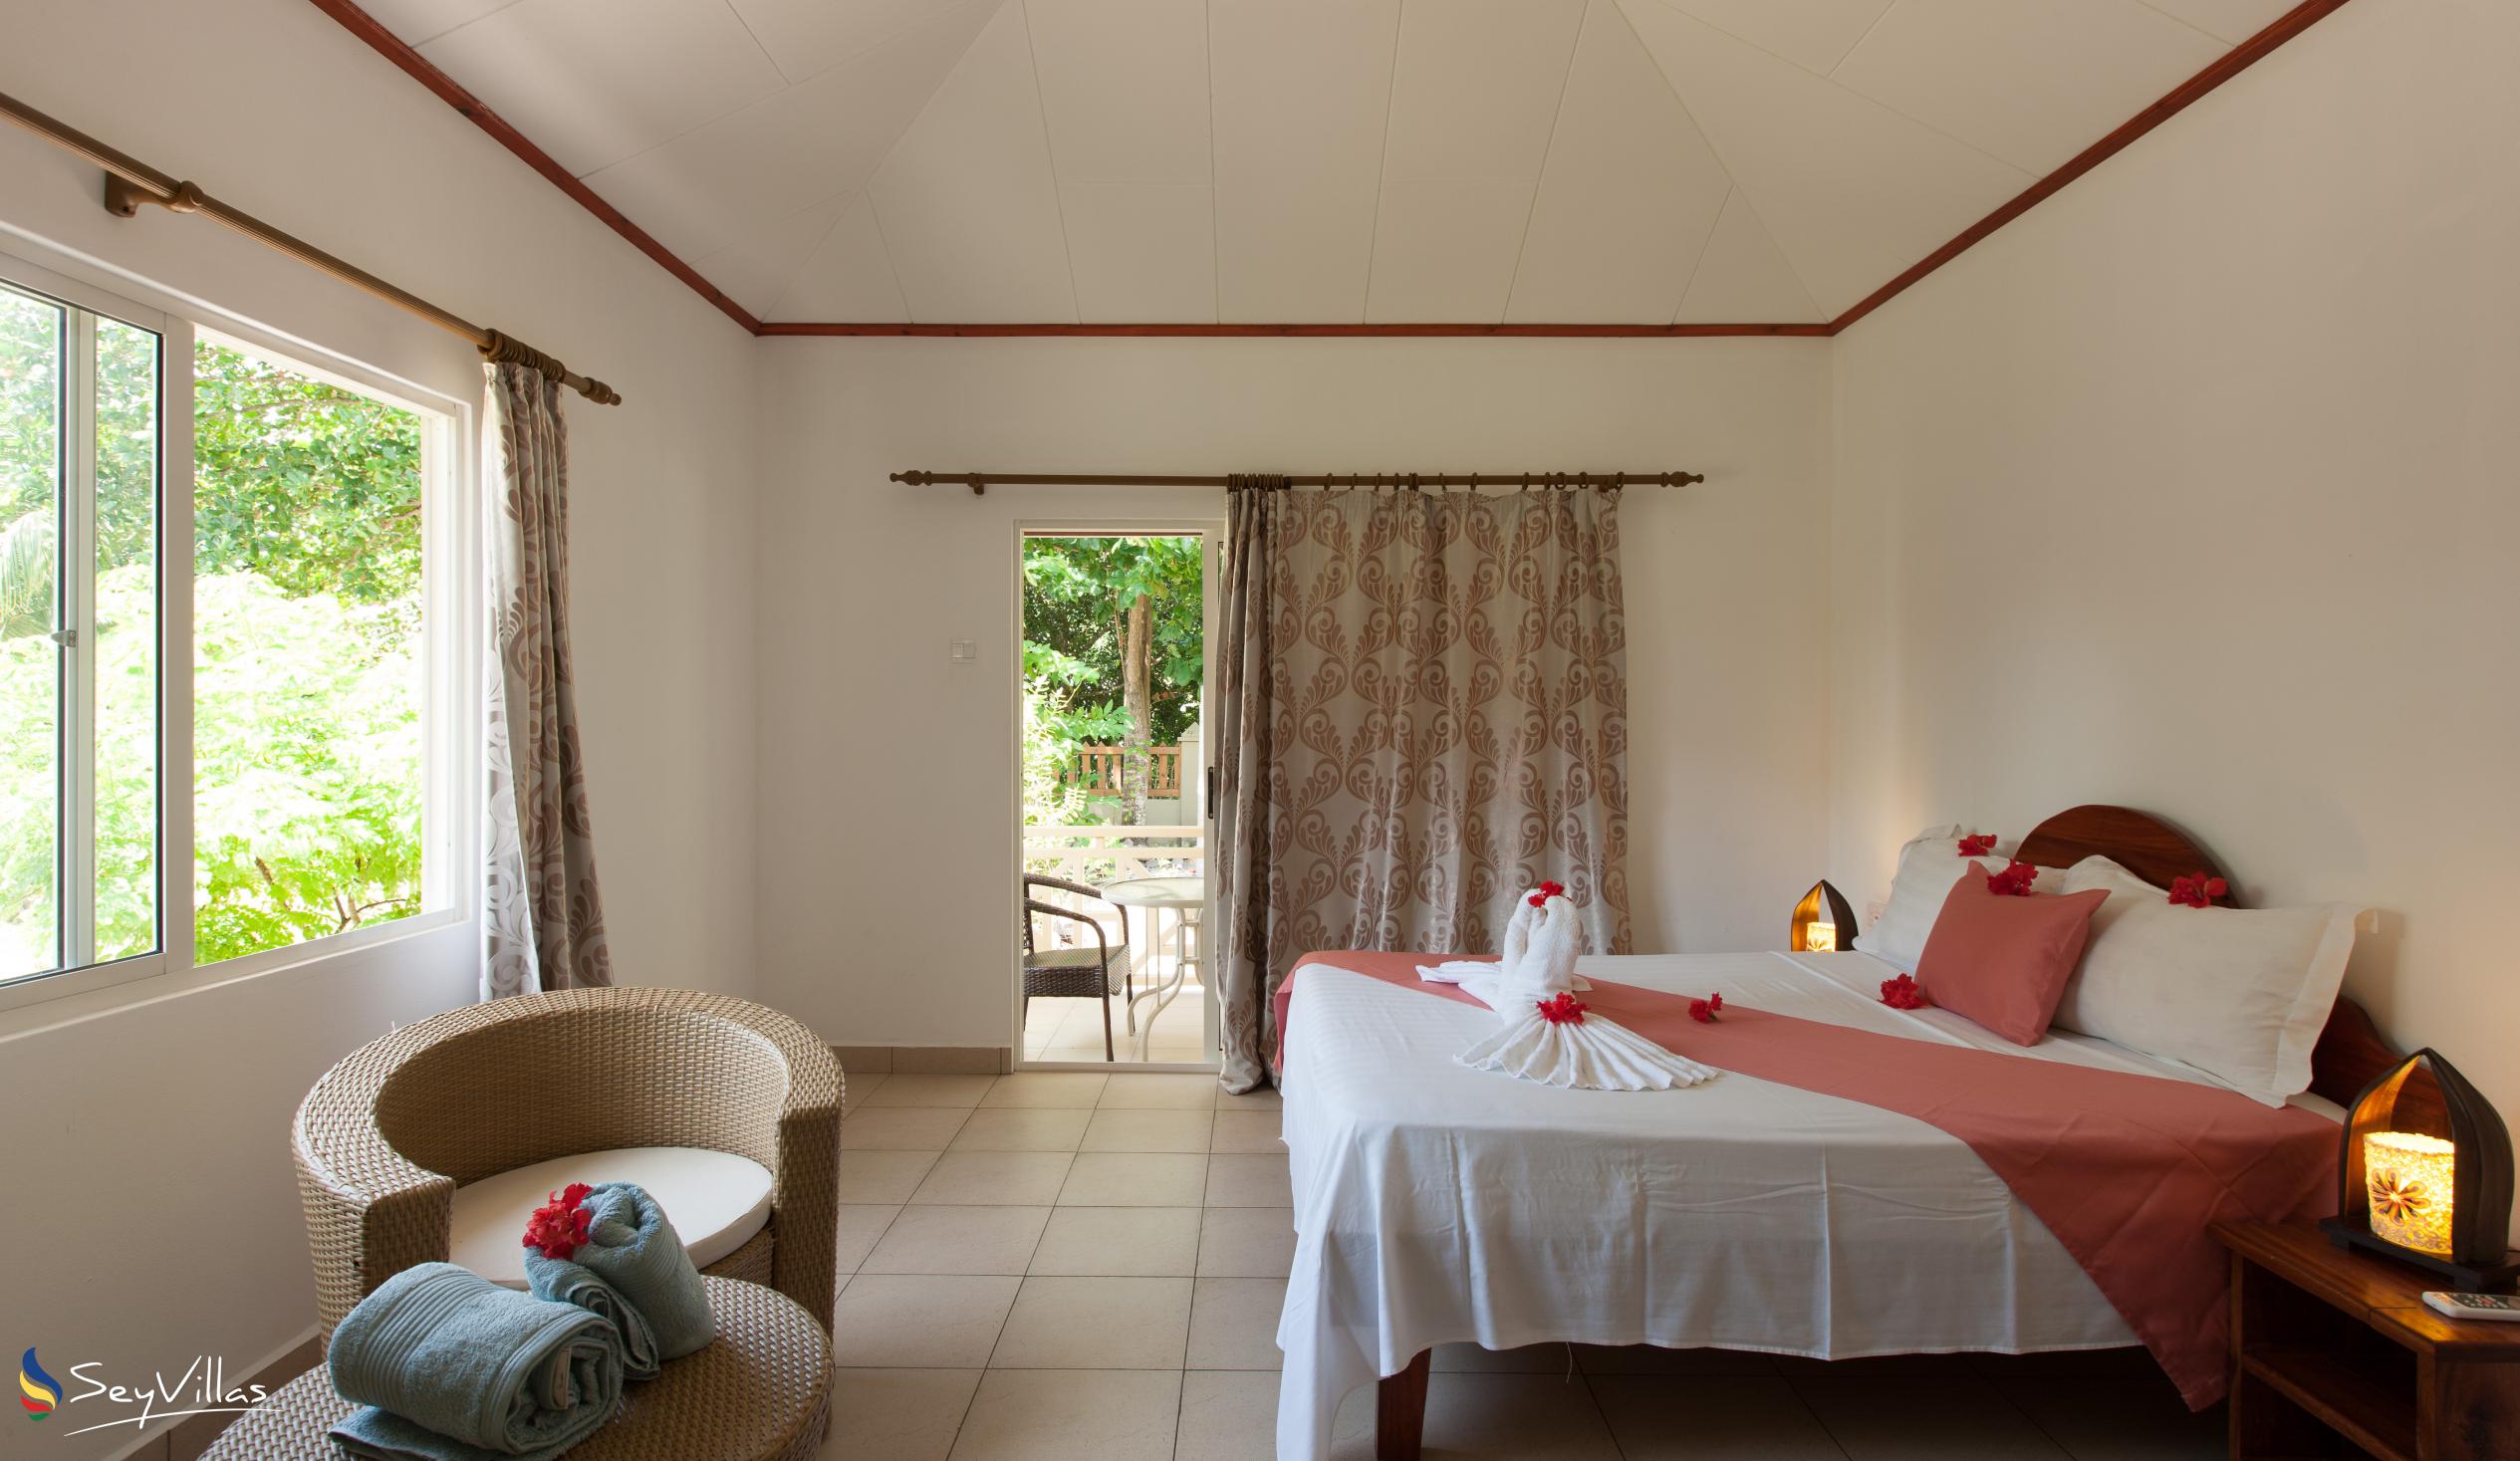 Photo 4: Hostellerie La Digue - 3-Bedroom Chalet - La Digue (Seychelles)